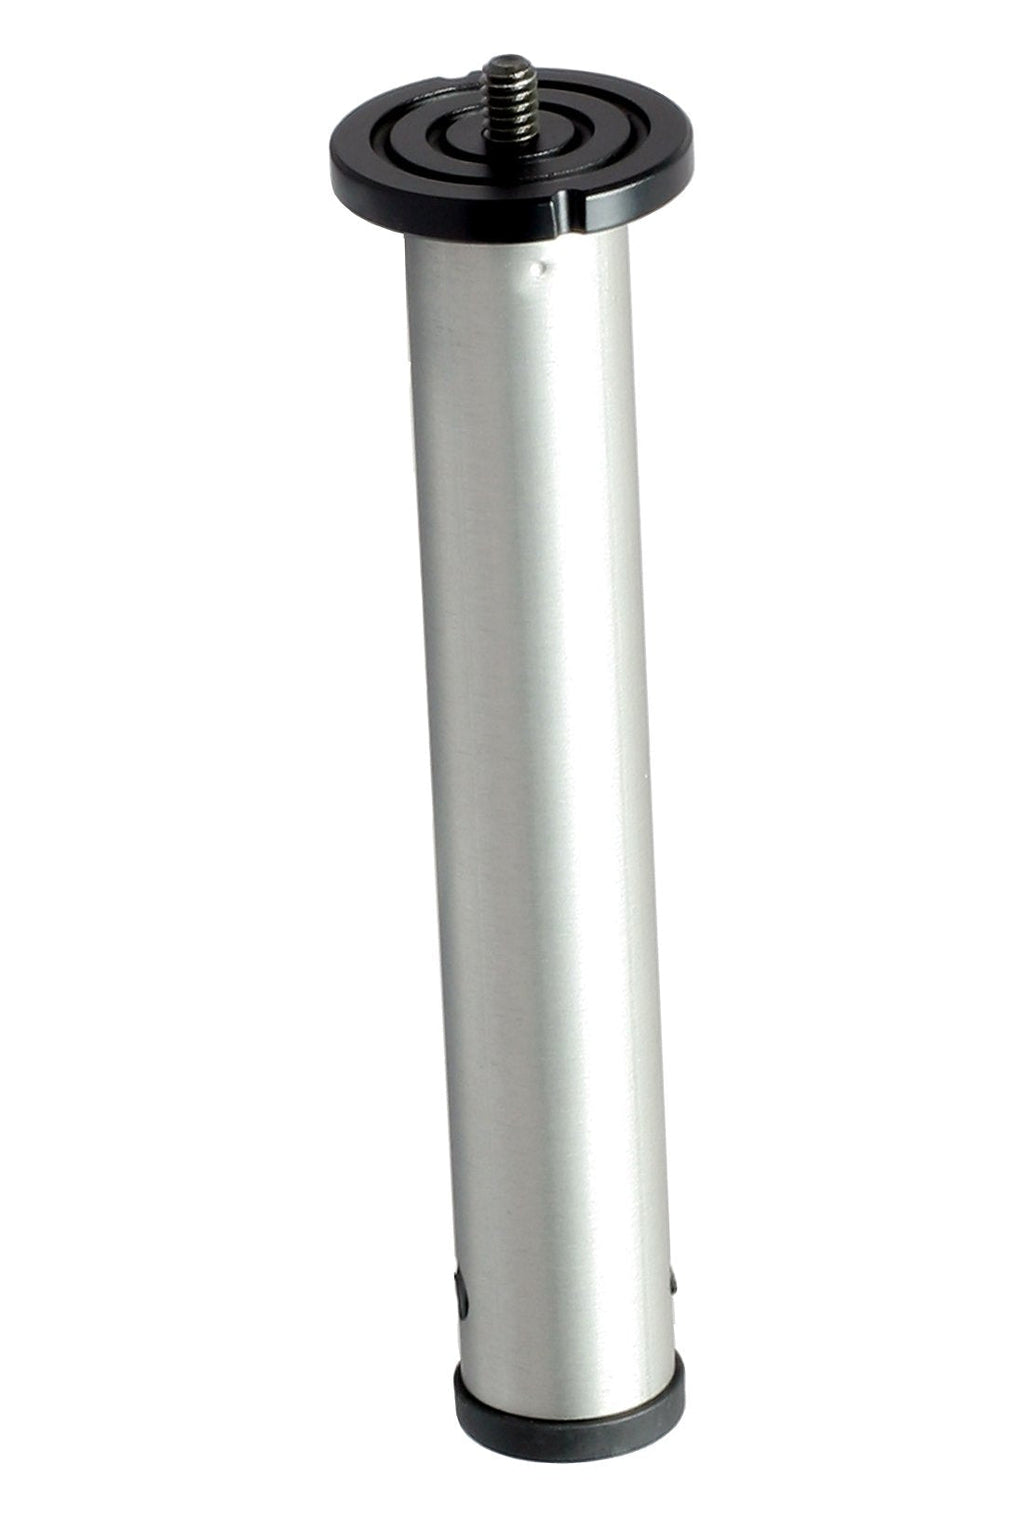 SLIK Short Center Column for 330DX, Silver (618-301)